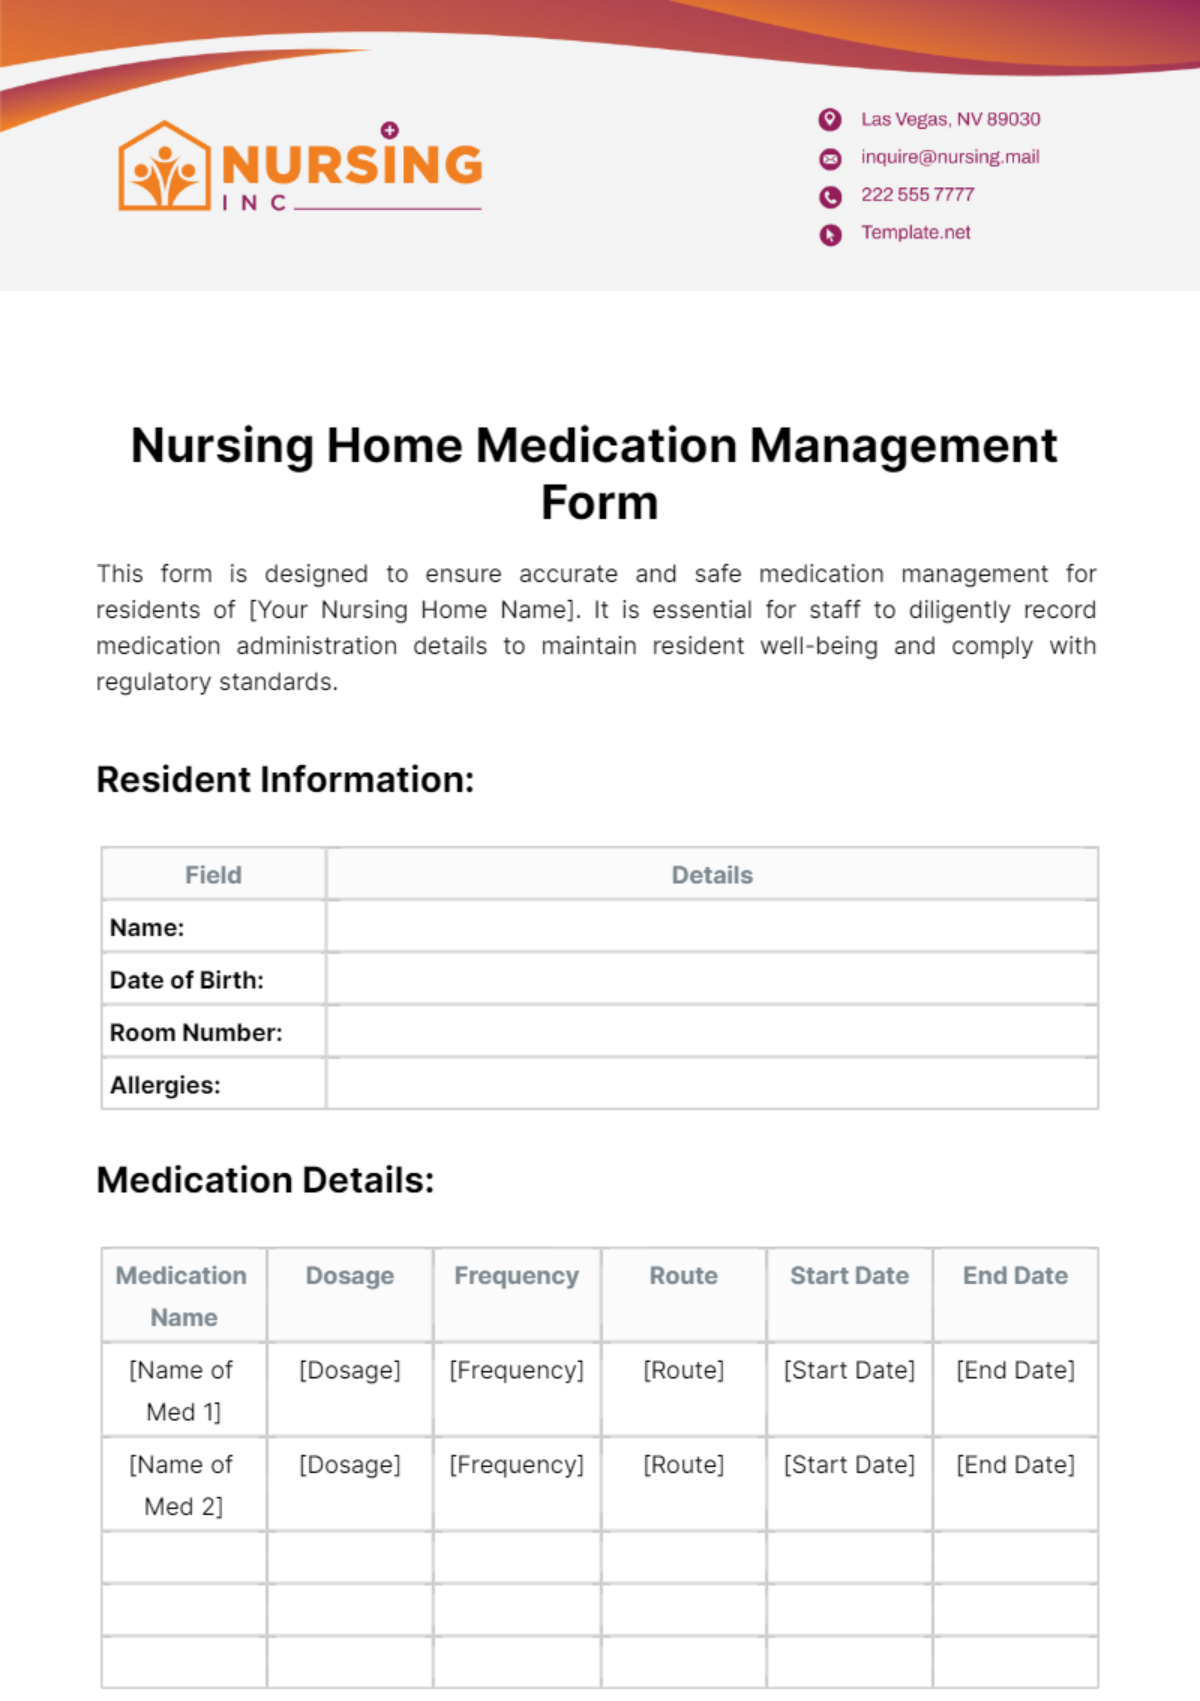 Nursing Home Medication Management Form Template